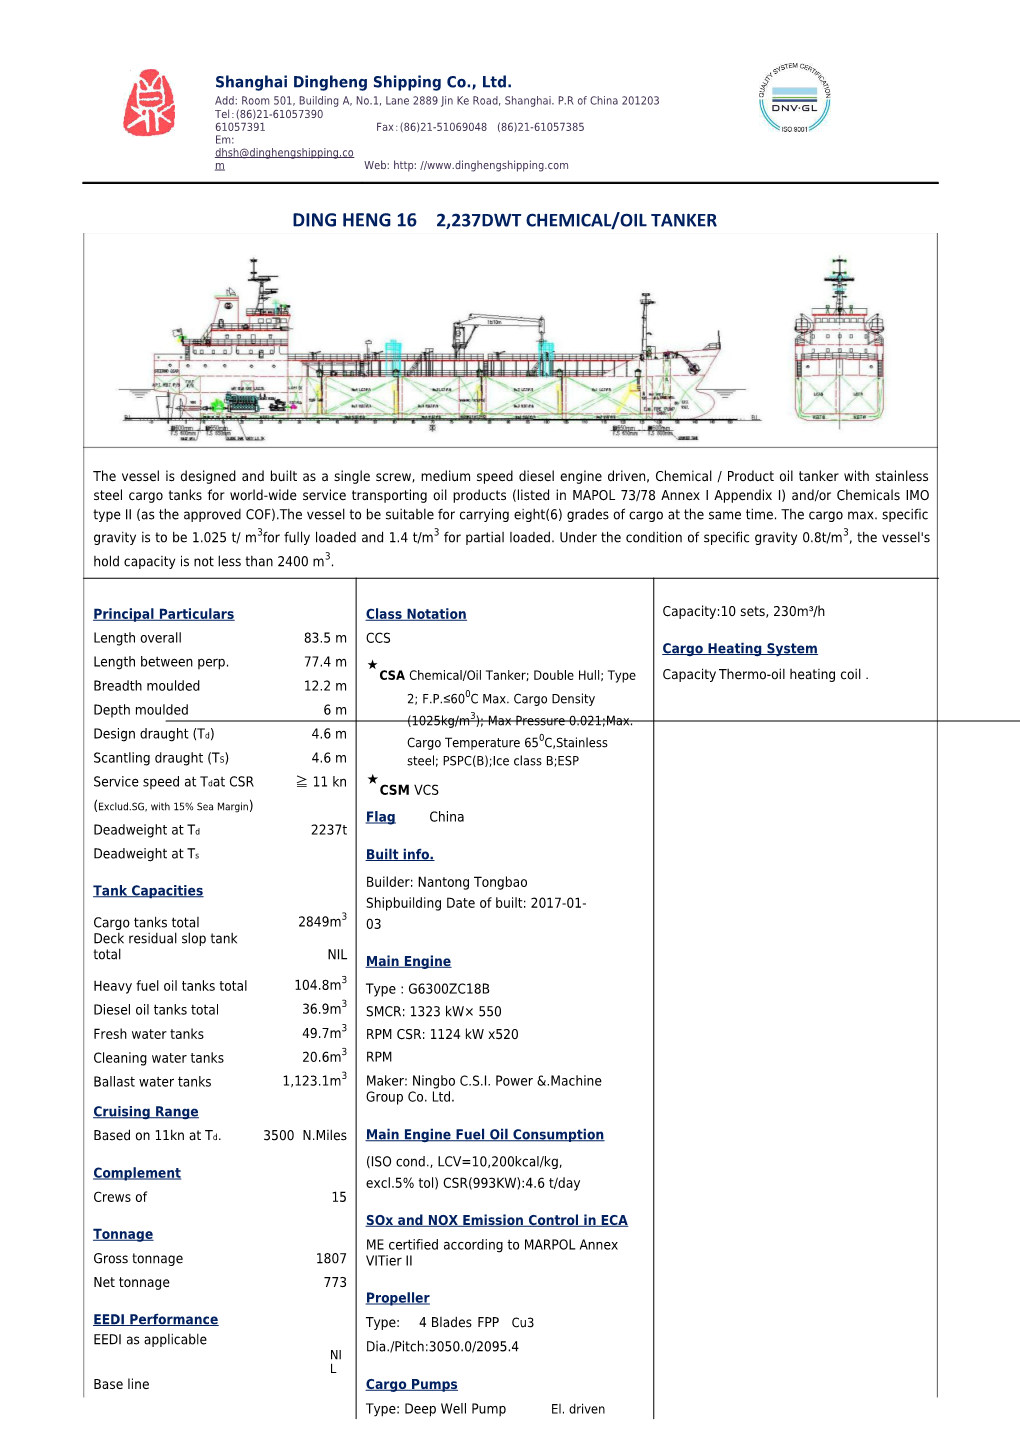 Ding Heng 162,237Dwt Chemical/Oil Tanker